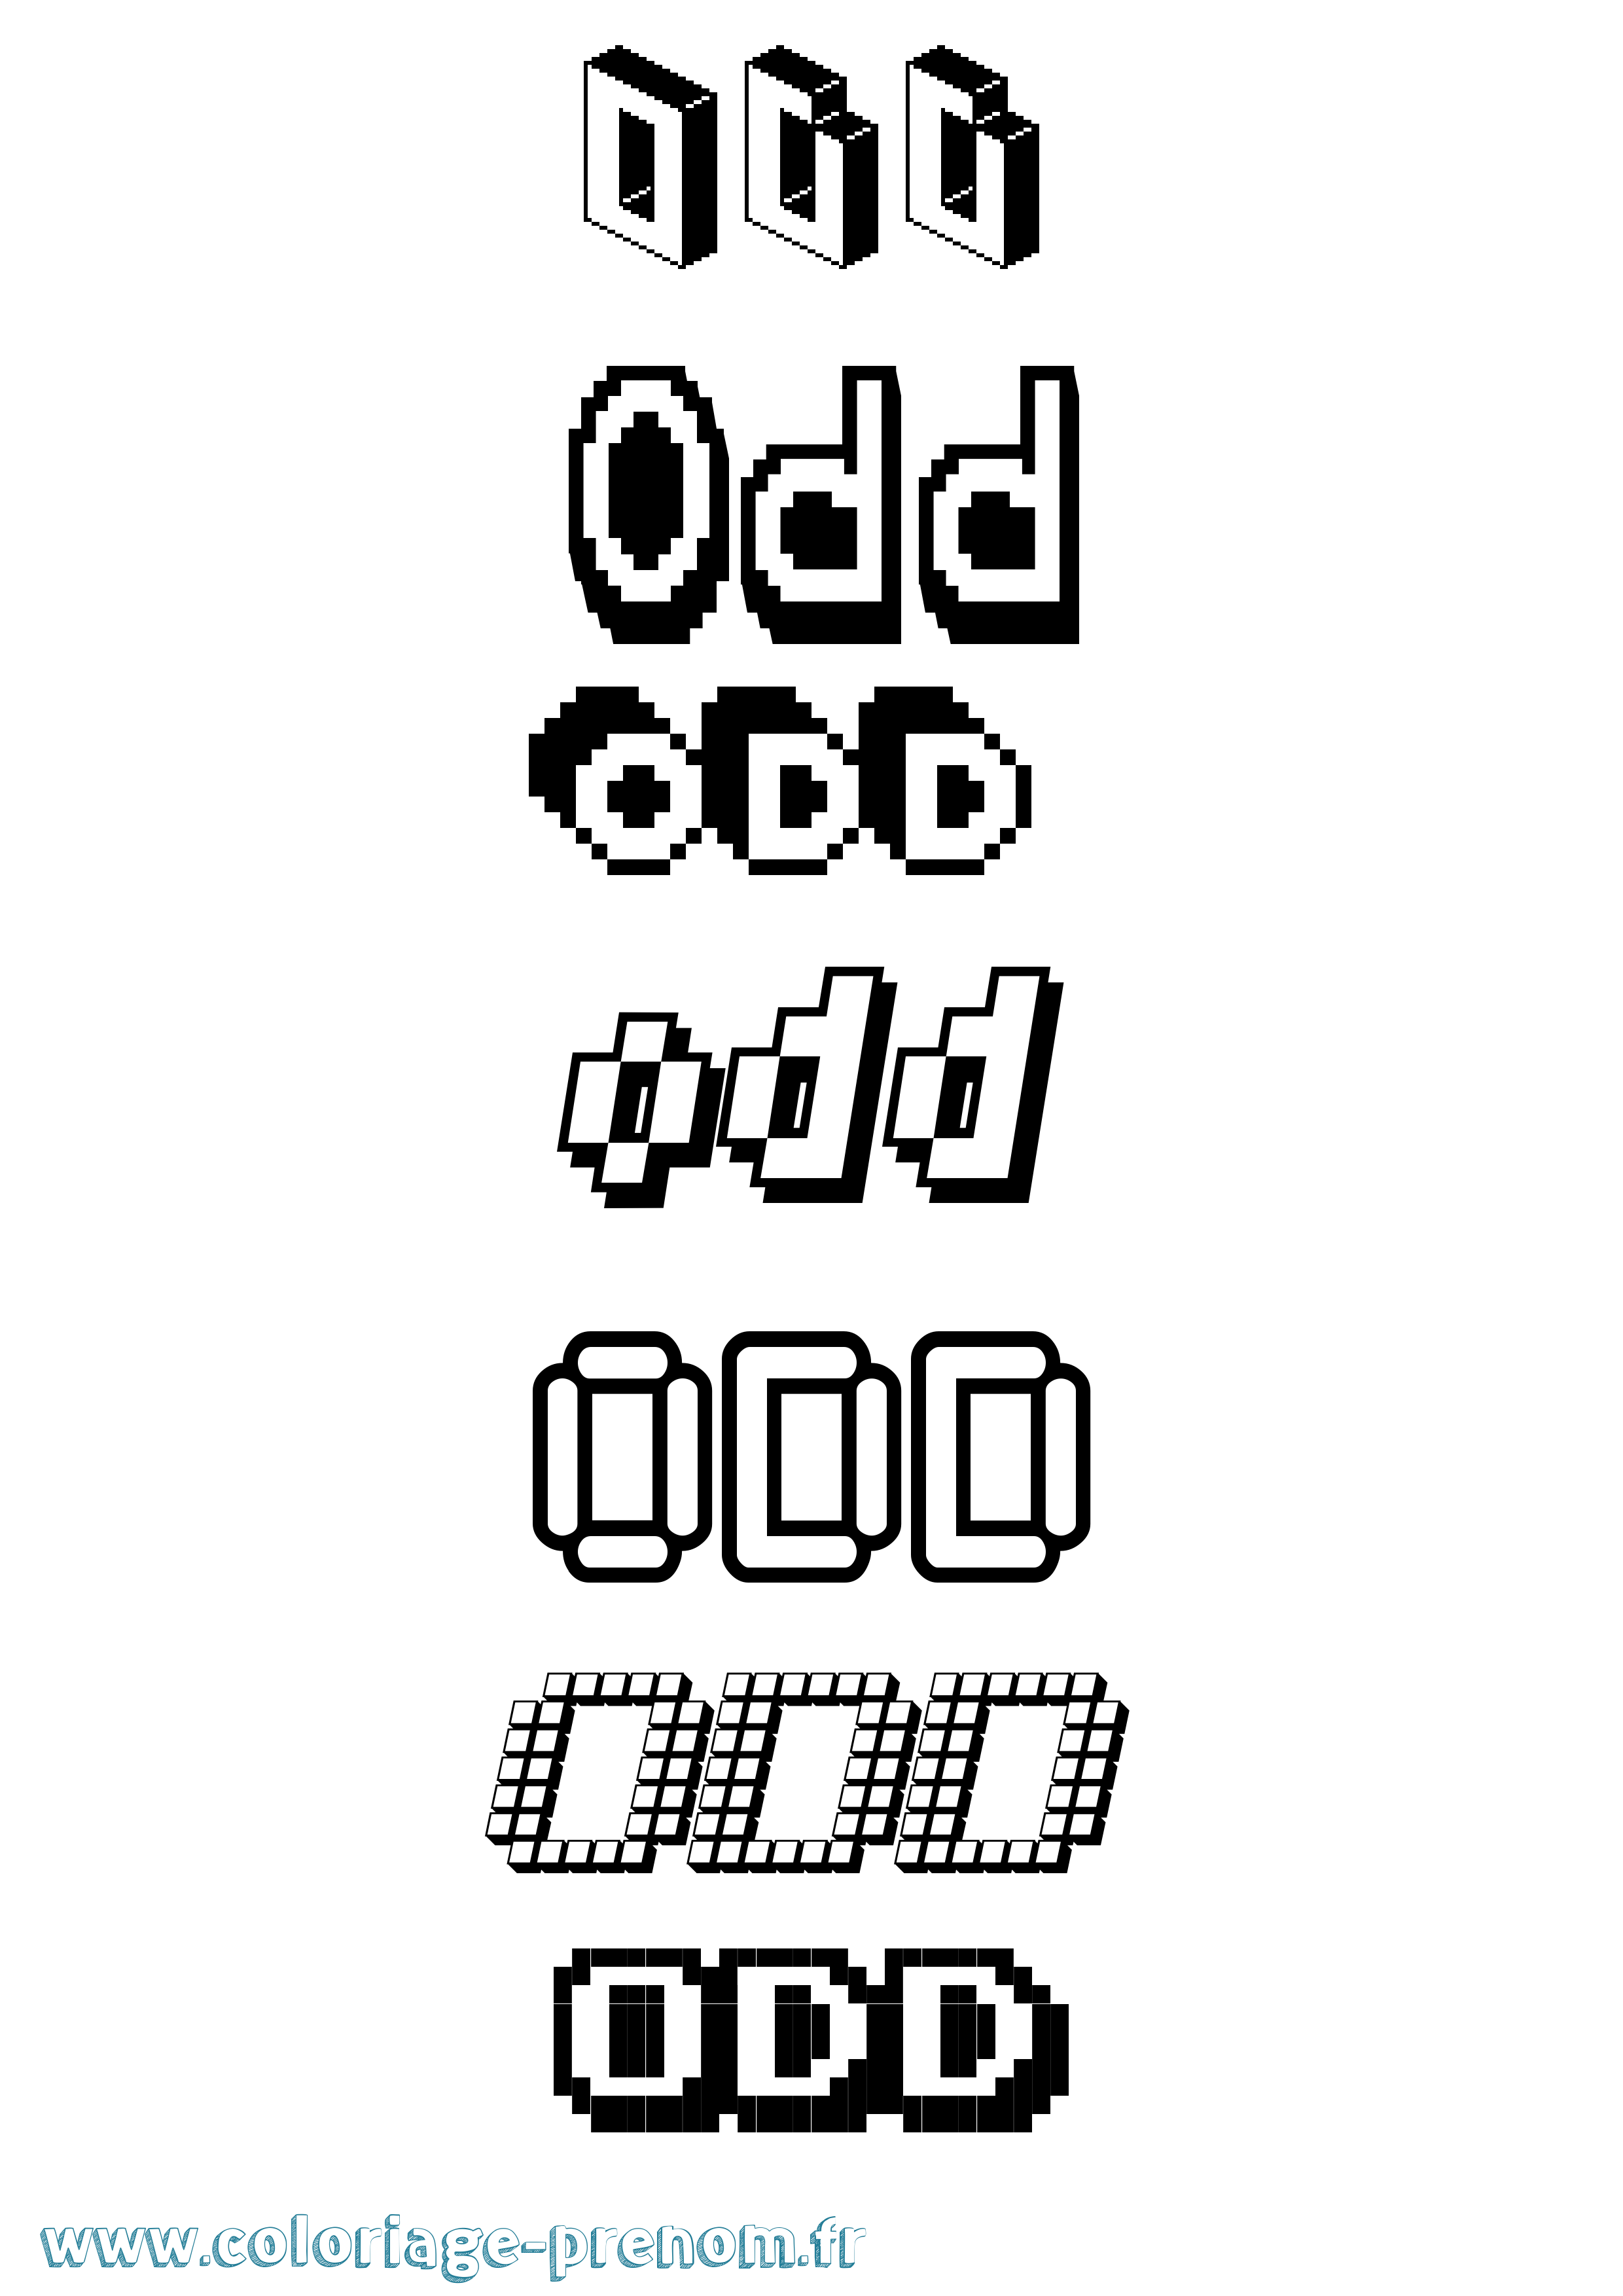 Coloriage prénom Odd Pixel